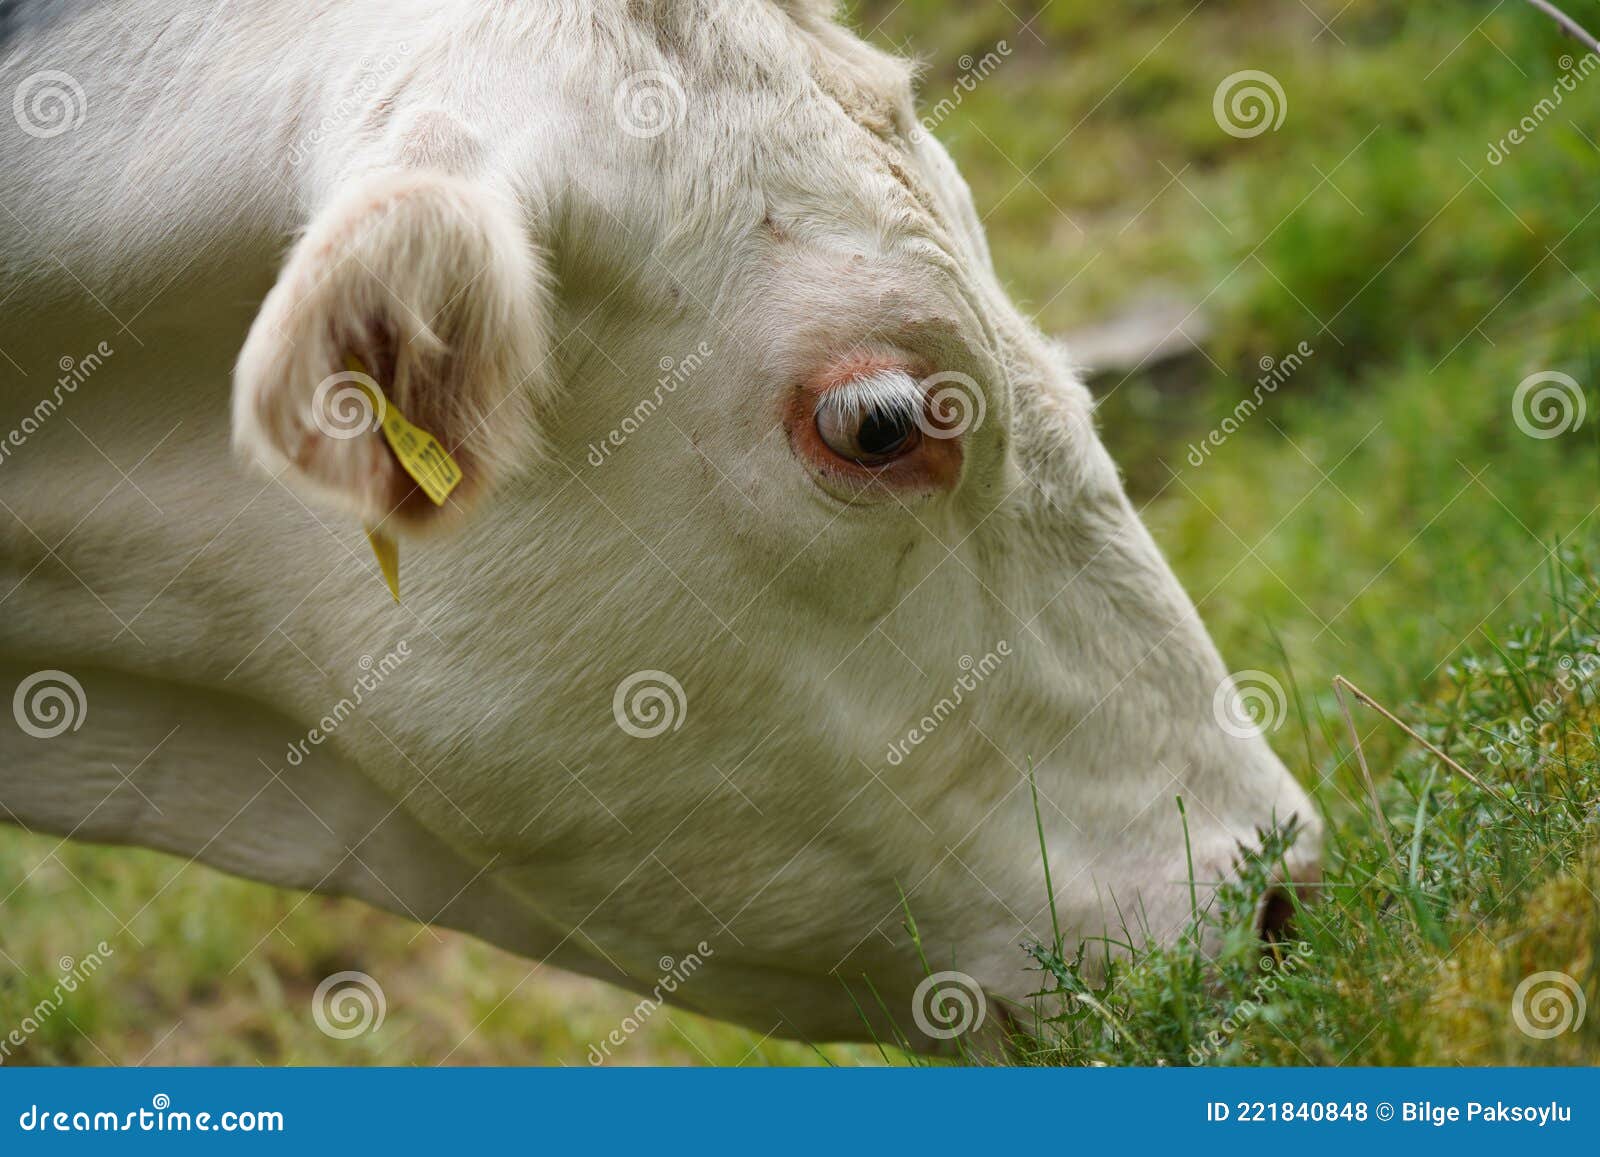 white cow portrait grazing in nature in hochsauerlandkreis germany